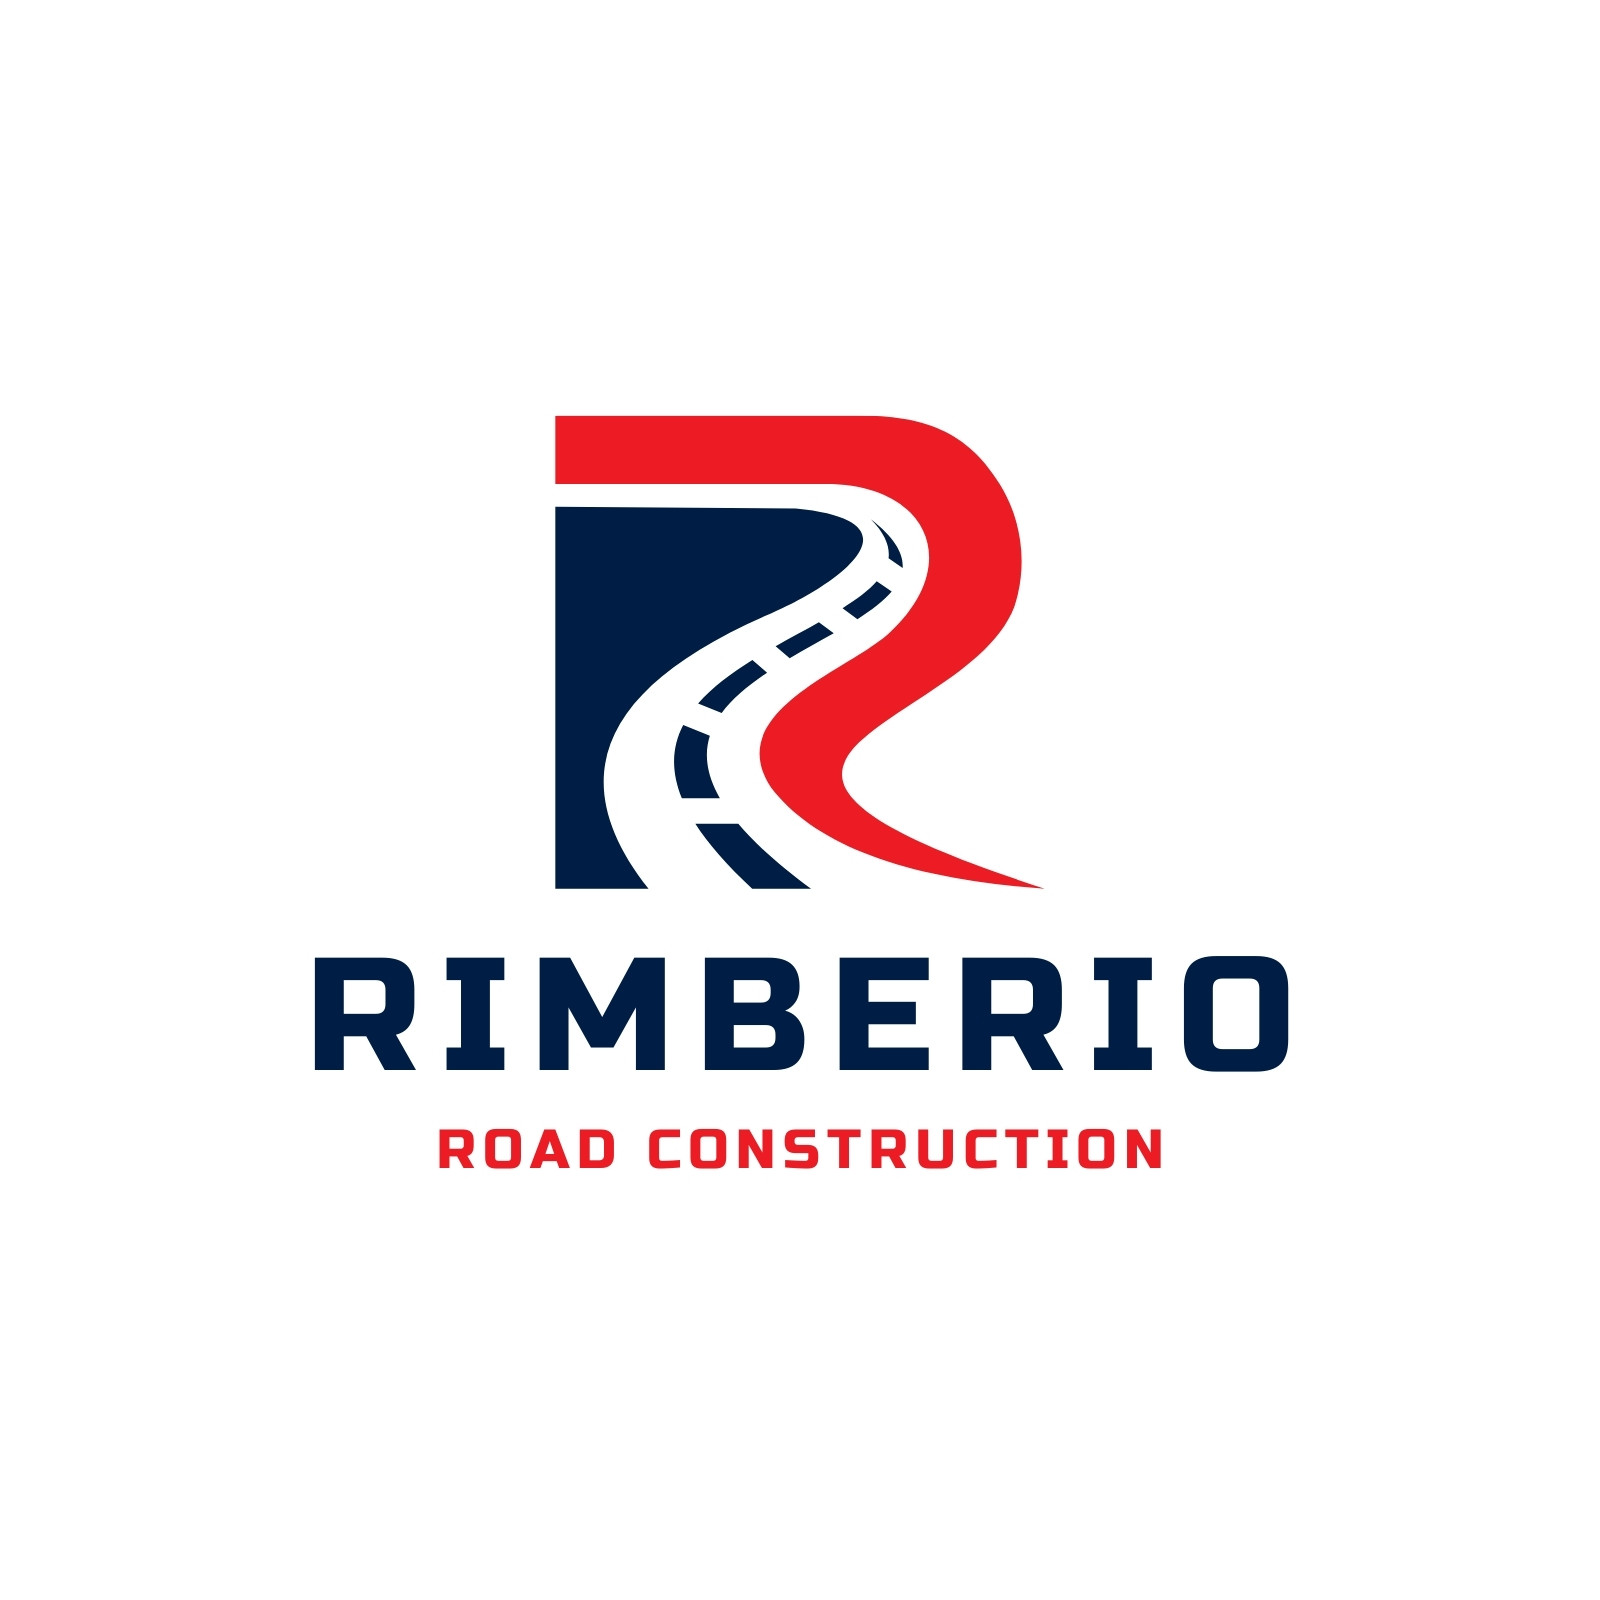 Road Roller Construction Logo | BrandCrowd Logo Maker